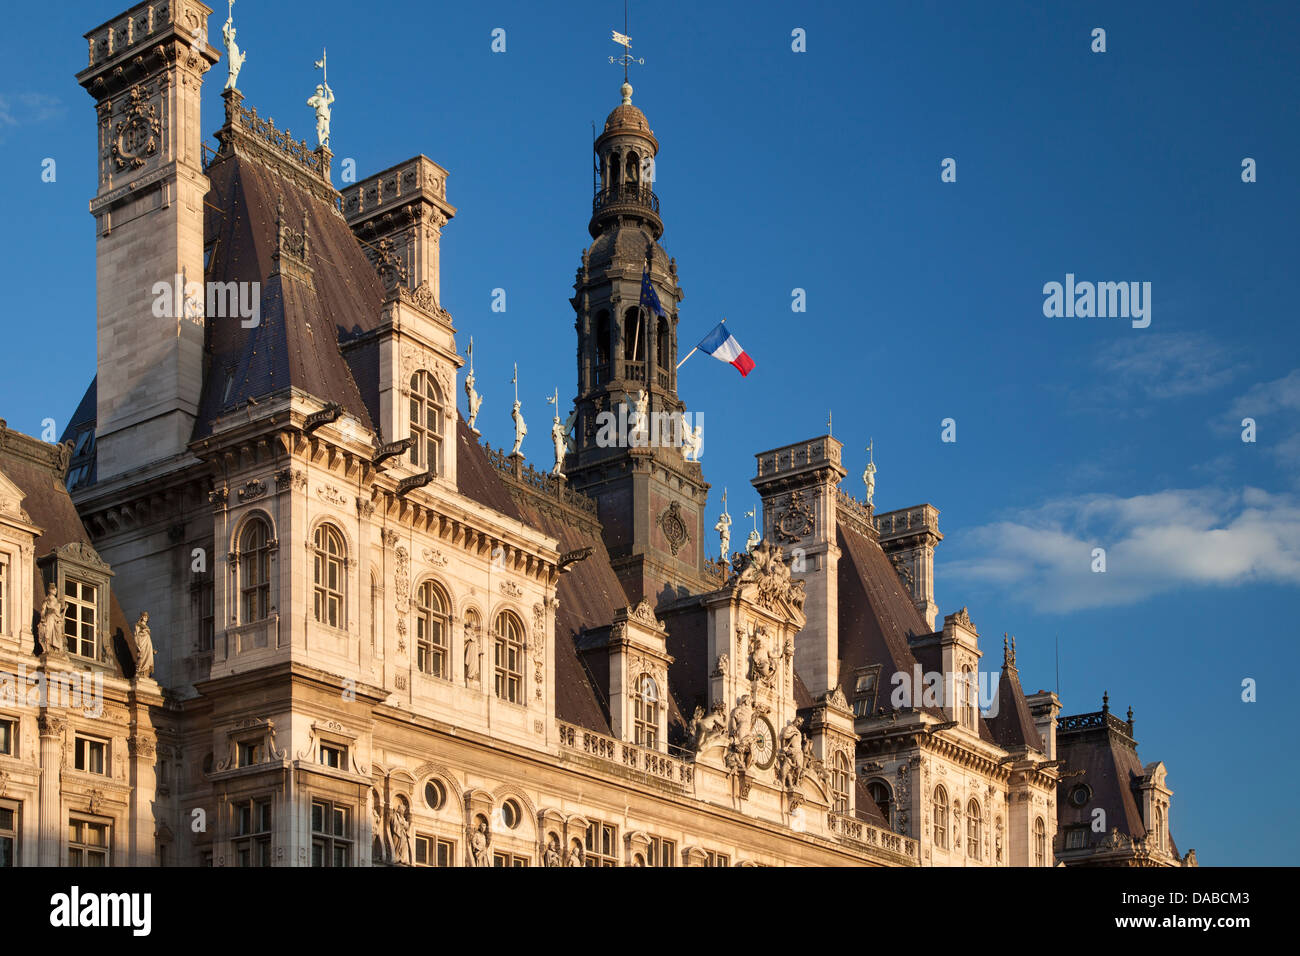 Ornate Hotel de Ville (Construit 1628), 1892 - Paris, France Banque D'Images